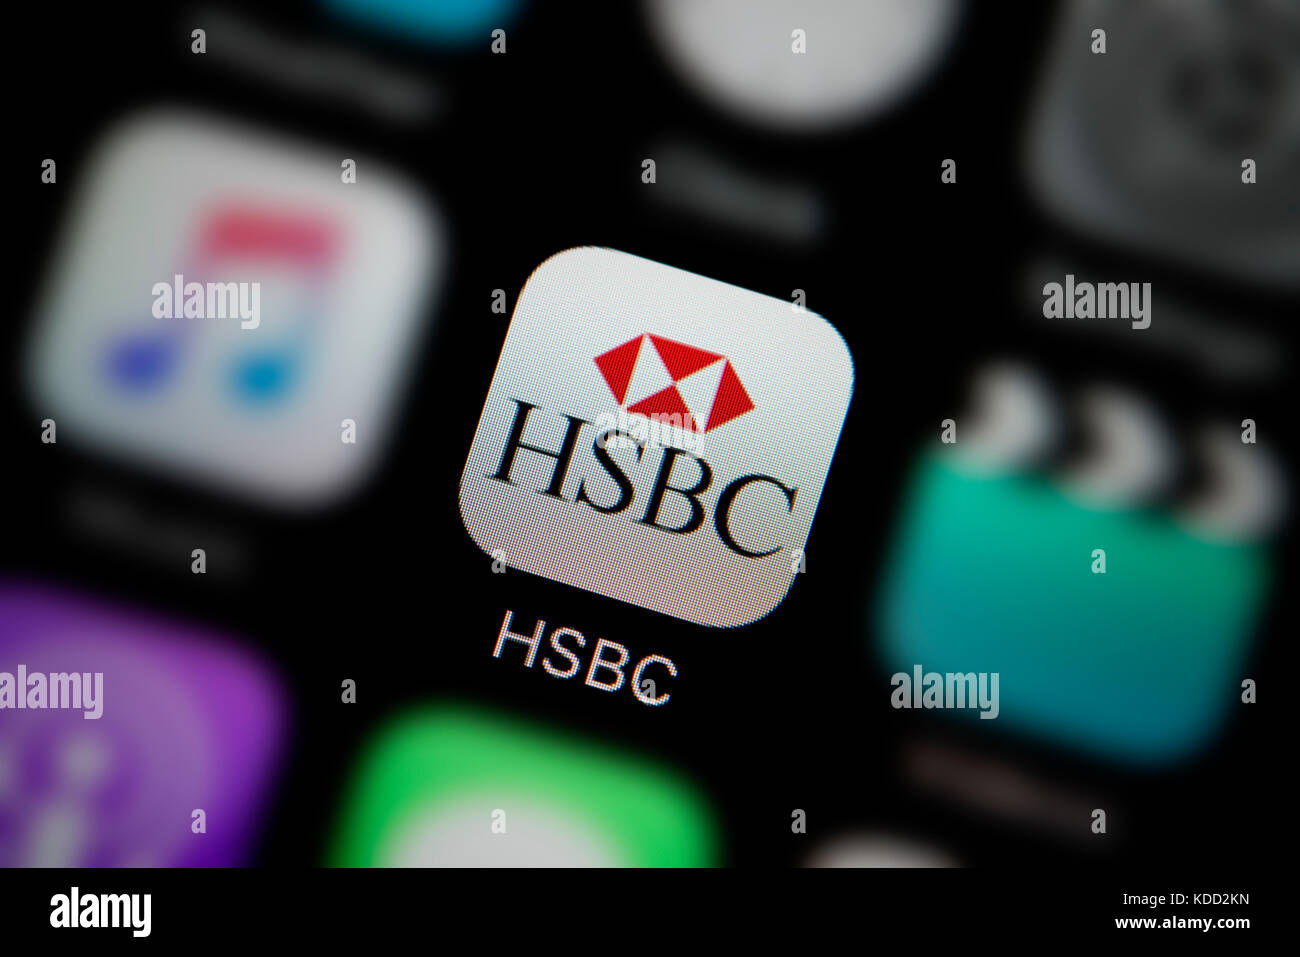 Un gros plan sur le logo représentant la Banque HSBC icône de l'application, comme on le voit sur l'écran d'un téléphone intelligent (usage éditorial uniquement) Banque D'Images